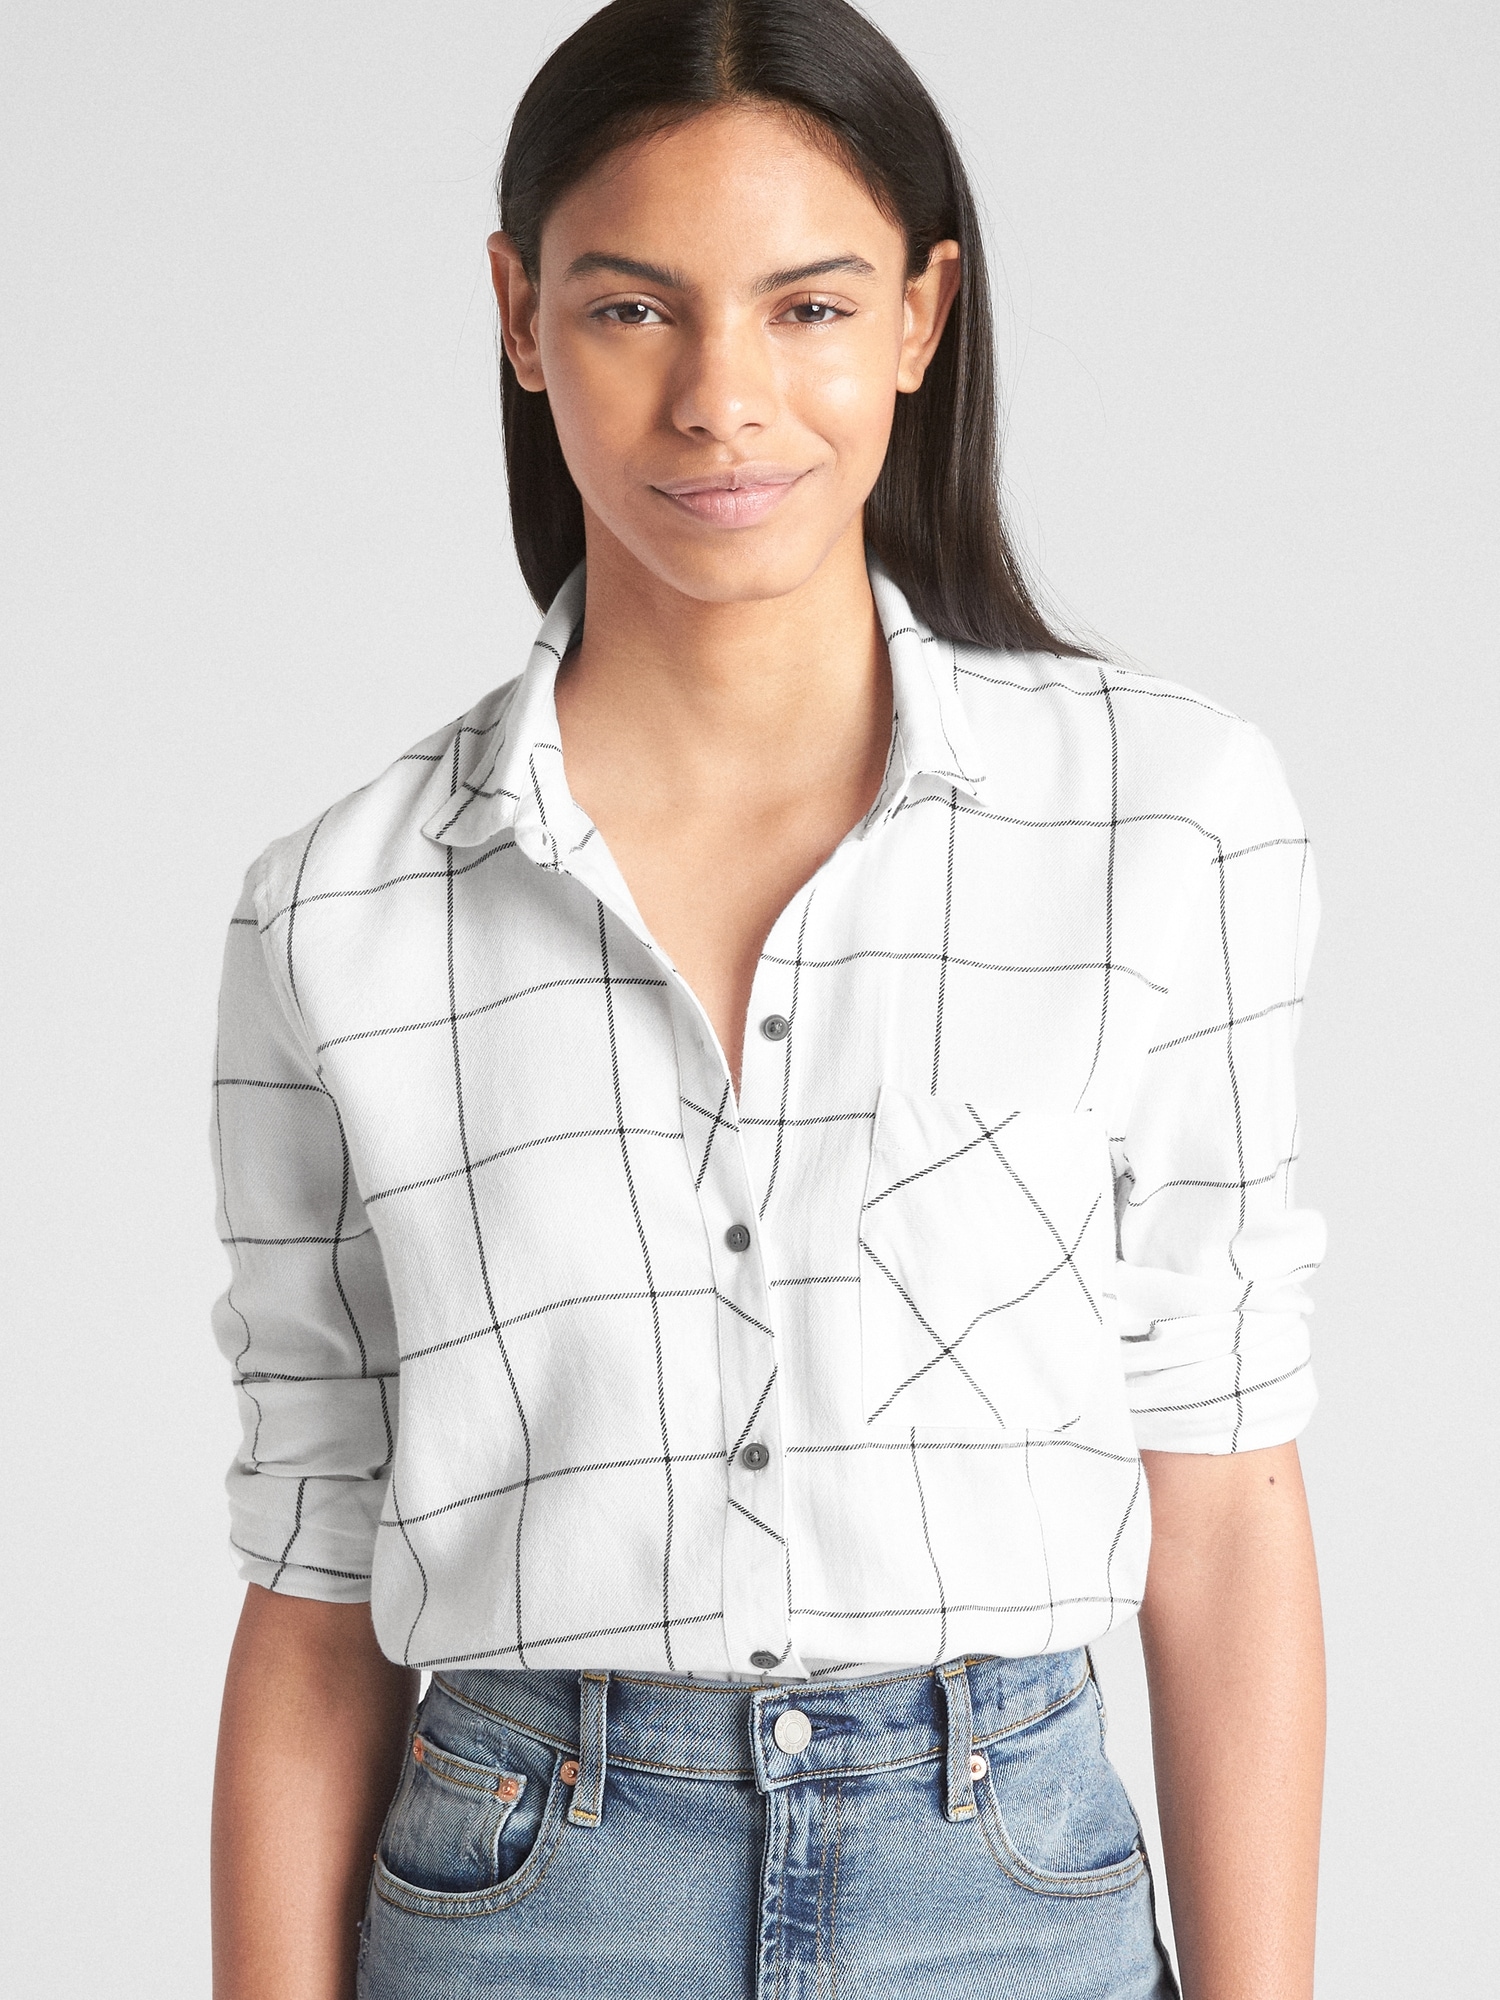 gap womens plaid flannel shirts